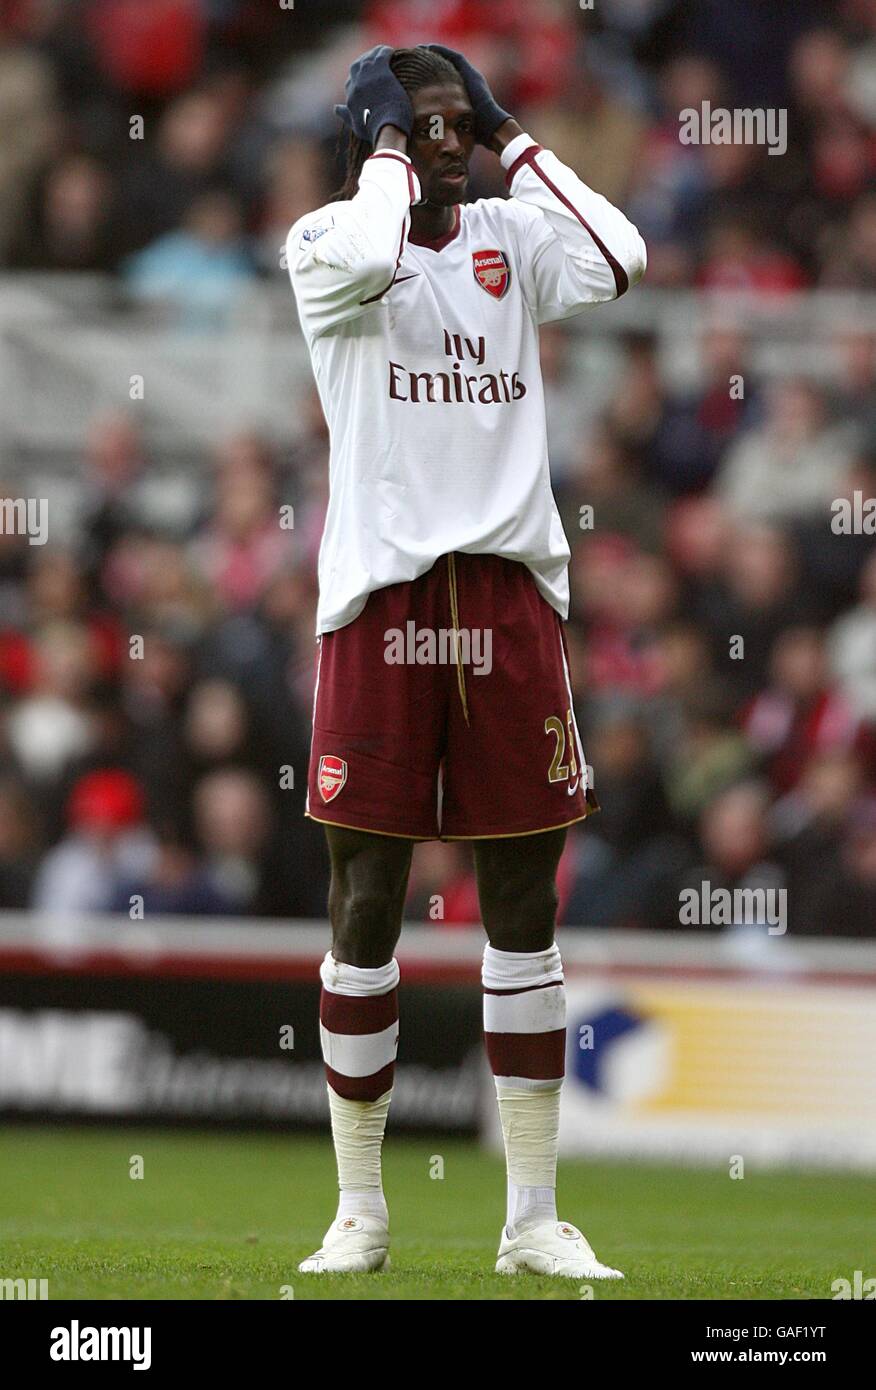 Fußball - Barclays Premier League - Middlesbrough / Arsenal - Riverside Stadium. Emmanuel Adebayor von Arsenal verpaßt eine Chance. Stockfoto